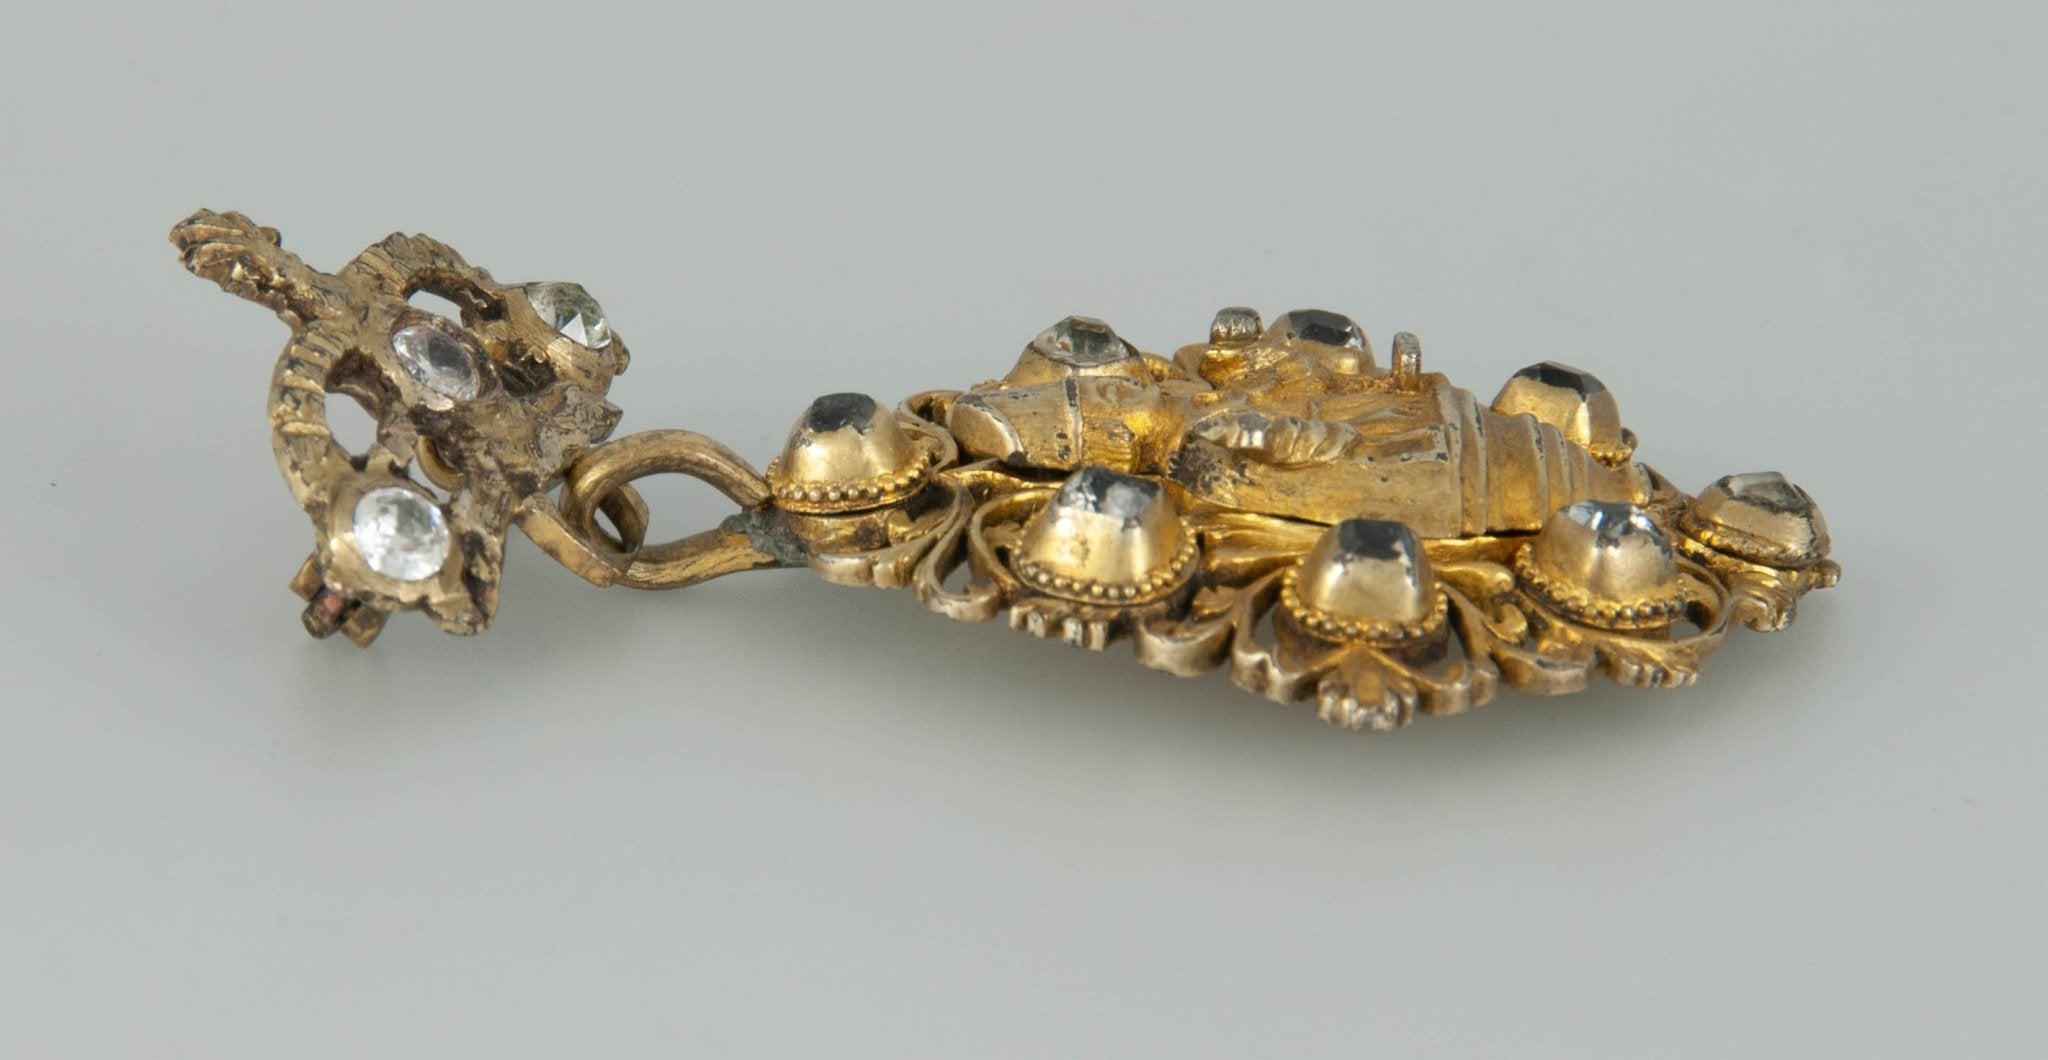 Broche Isabelino en plata dorada con diamantes - Mayka Jewels